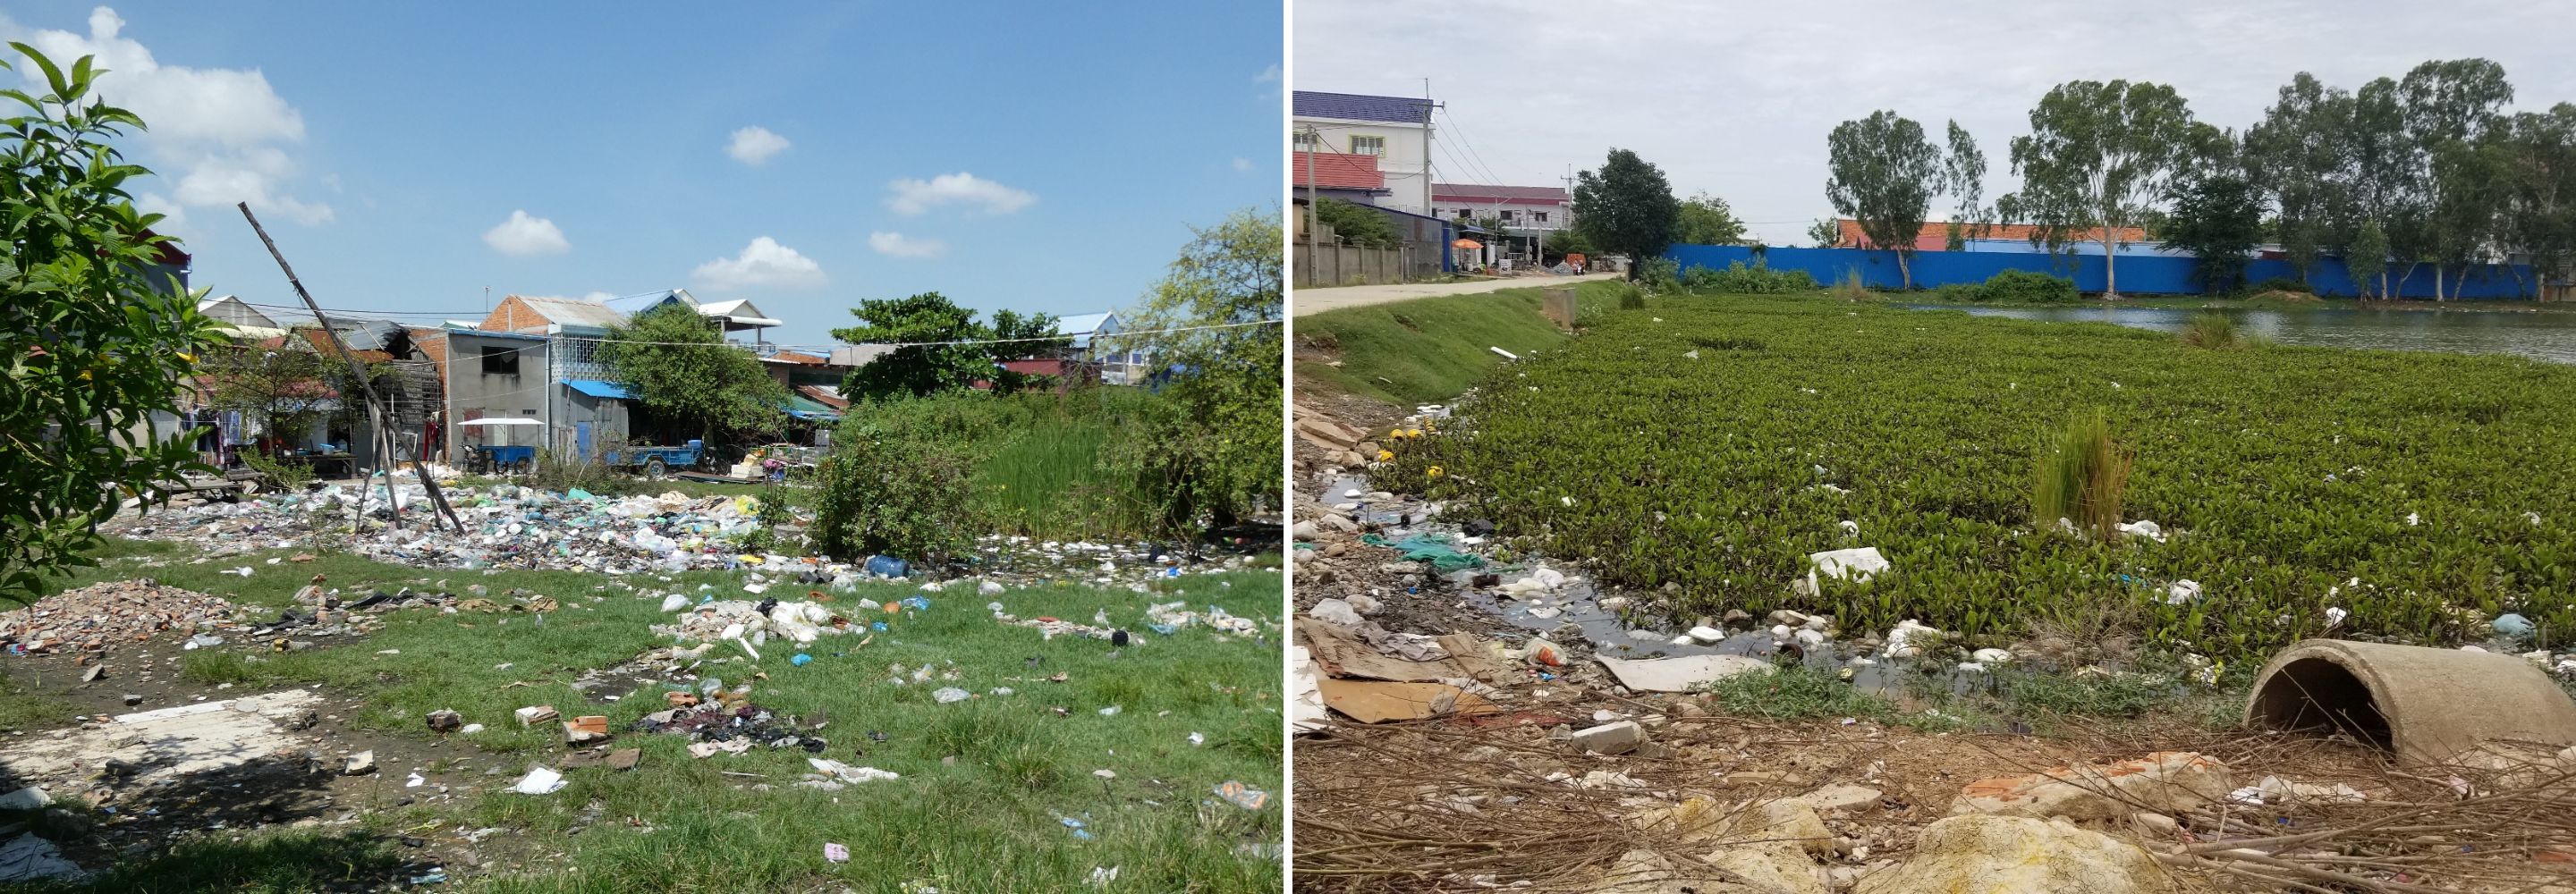 déchets et lac en banlieues de Phnom Penh